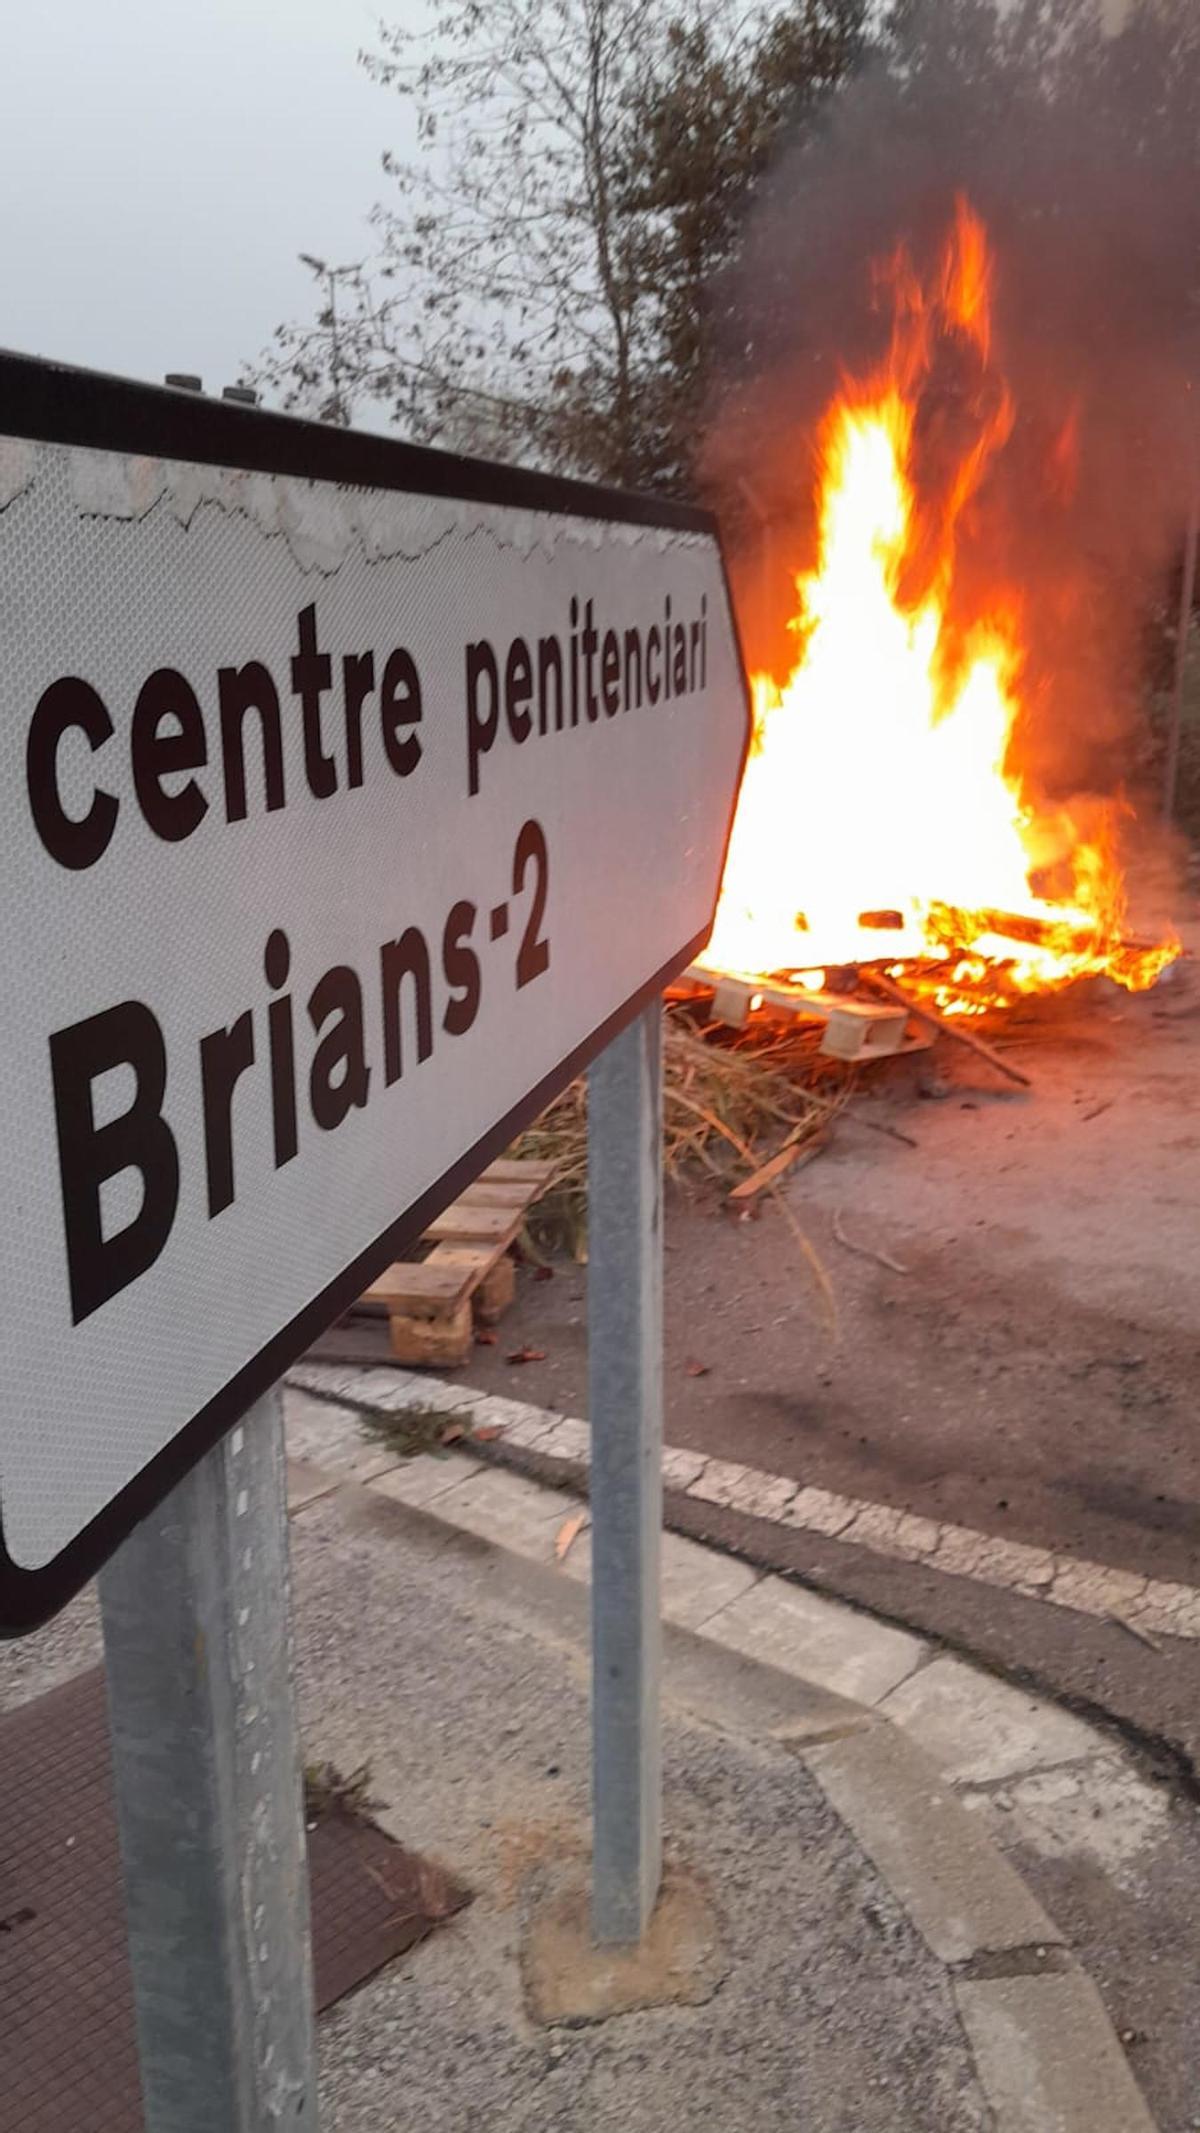 Protestas en los accesos a la cárcel de Brians para pedir mayor seguridad